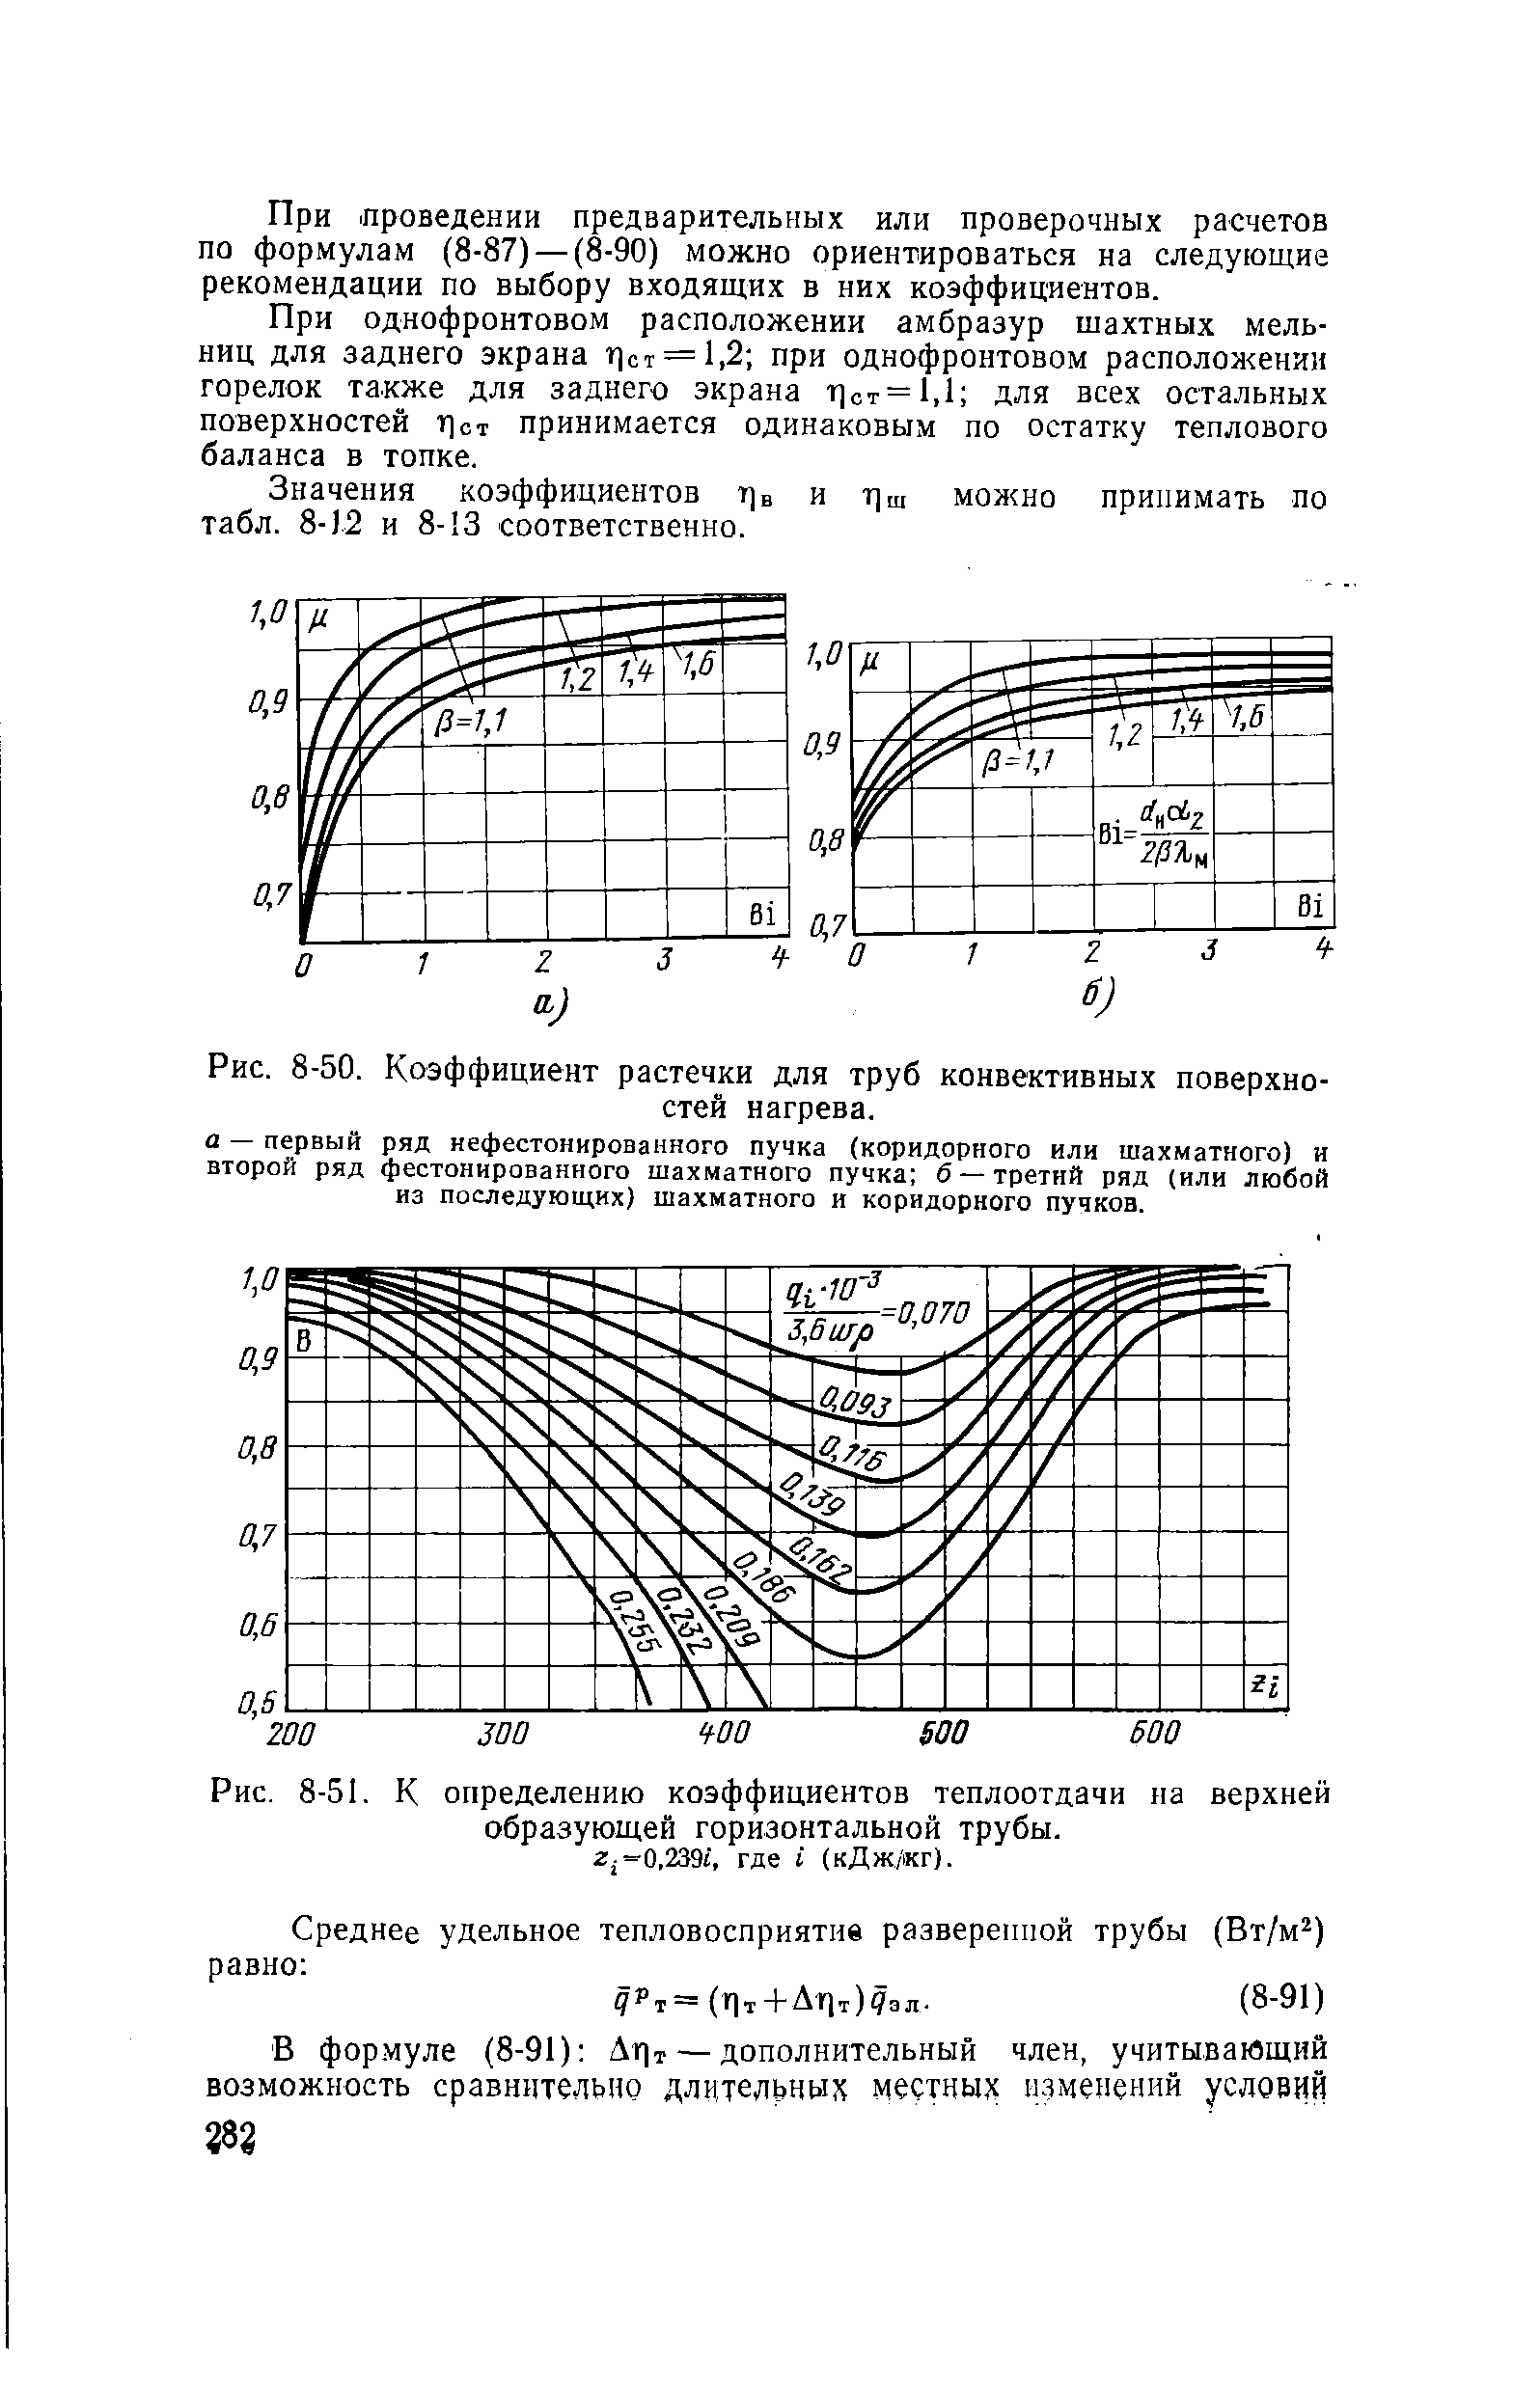 Рис. 8-51. К <a href="/info/222470">определению коэффициентов теплоотдачи</a> на верхней образующей горизонтальной трубы, г -0.239/, где i (кДж/кг).
